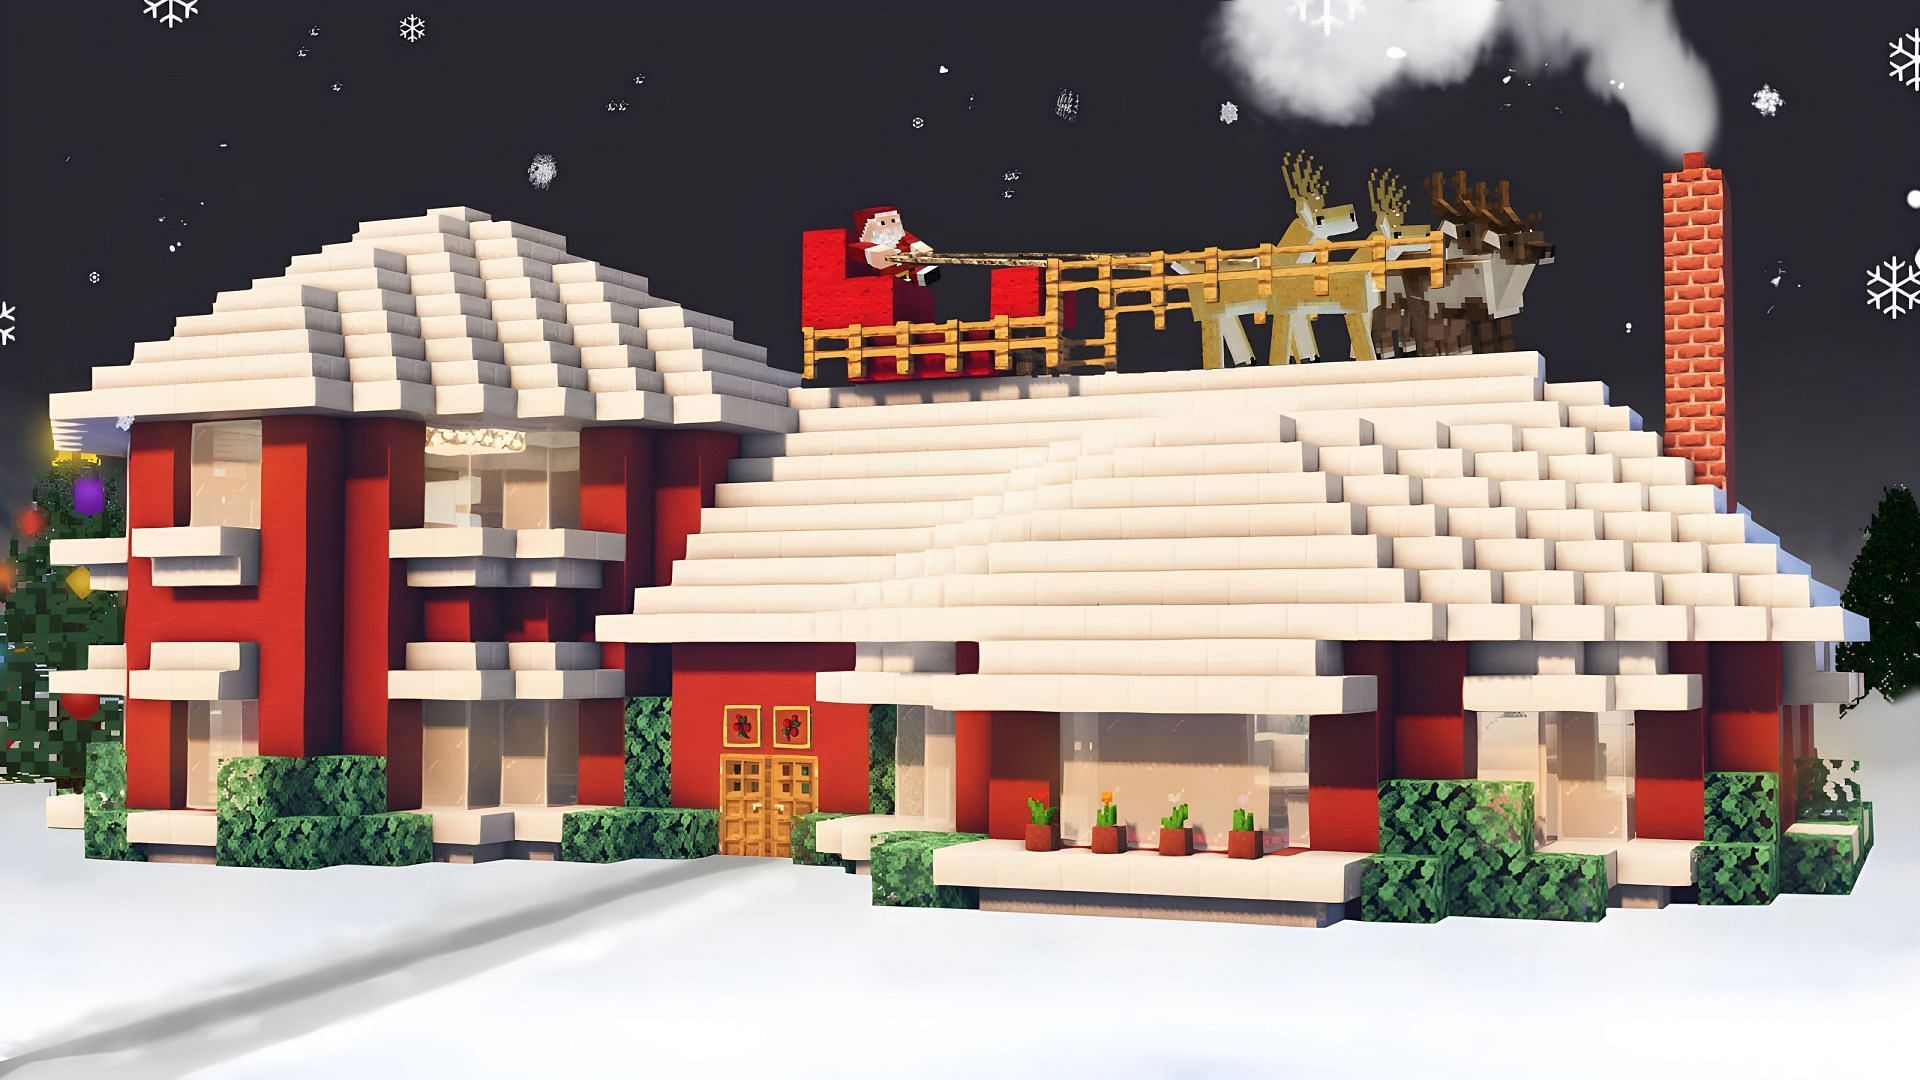 Minecraft Christmas houses are amazing during the holiday season (Image via Youtube/BlackBeltPanda)